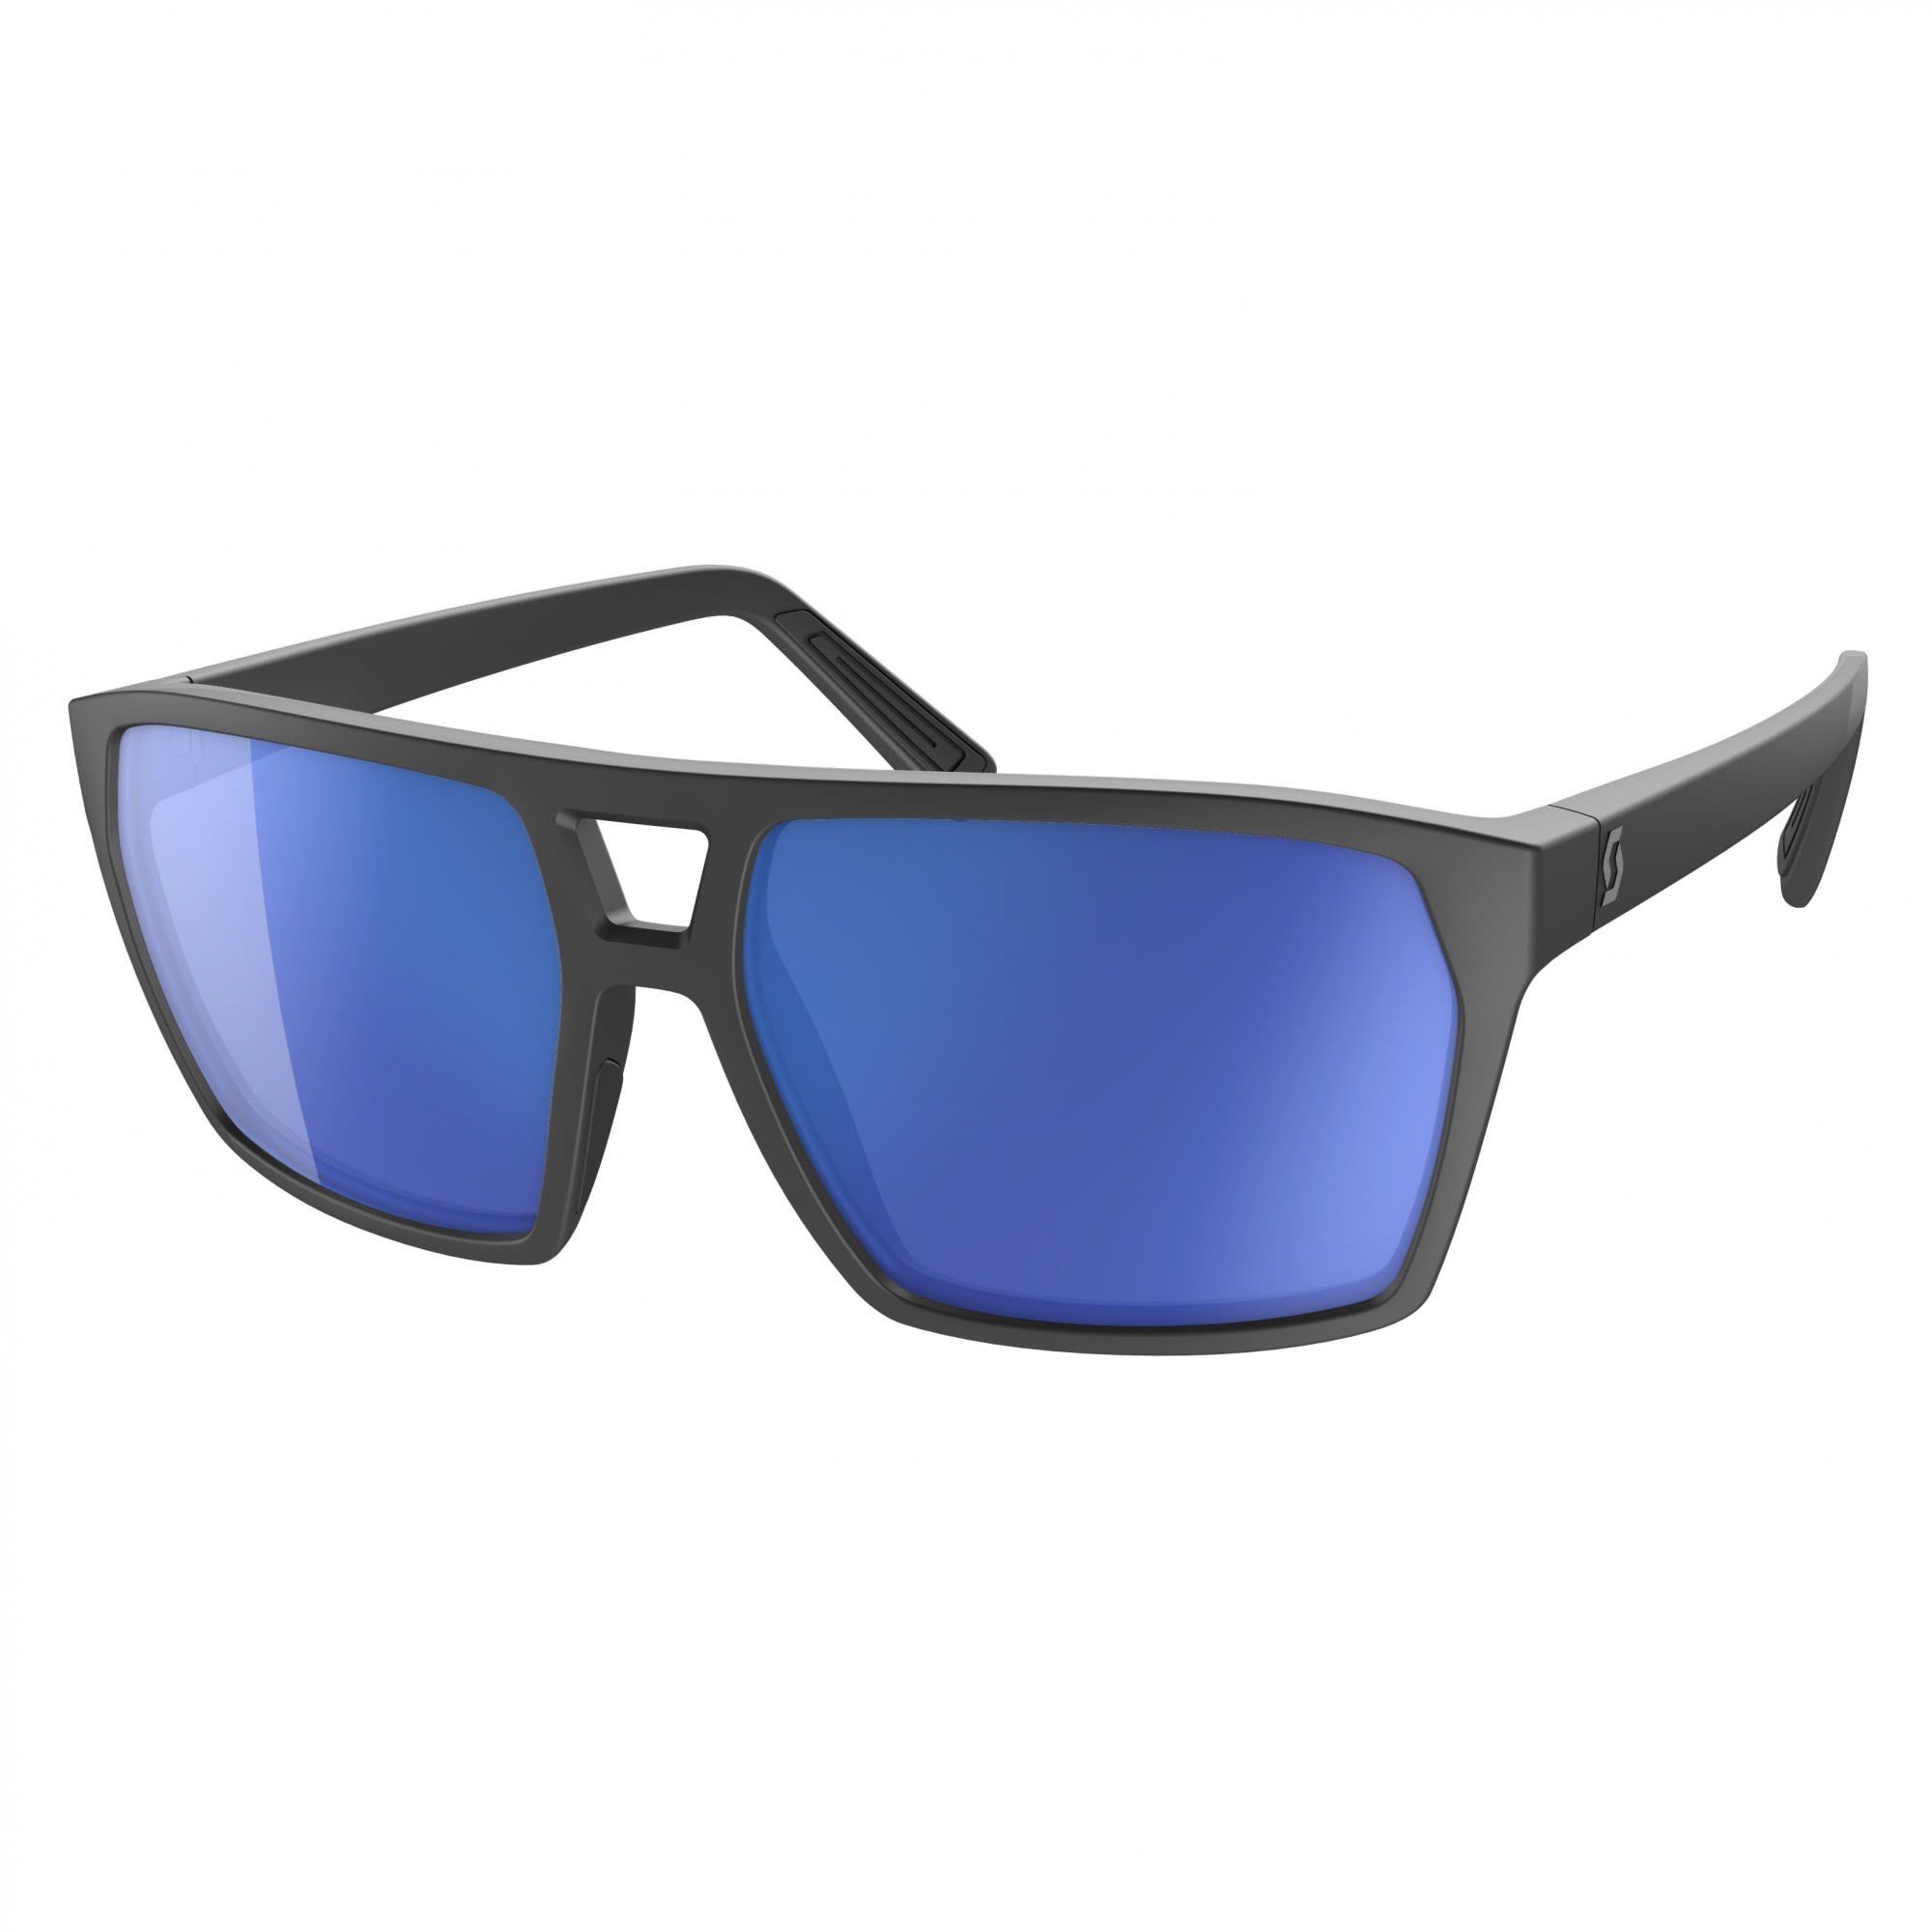 Scott Fahrradbrille Scott Tune Sunglasses Accessoires Black - Blue Chrome | Fahrradbrillen